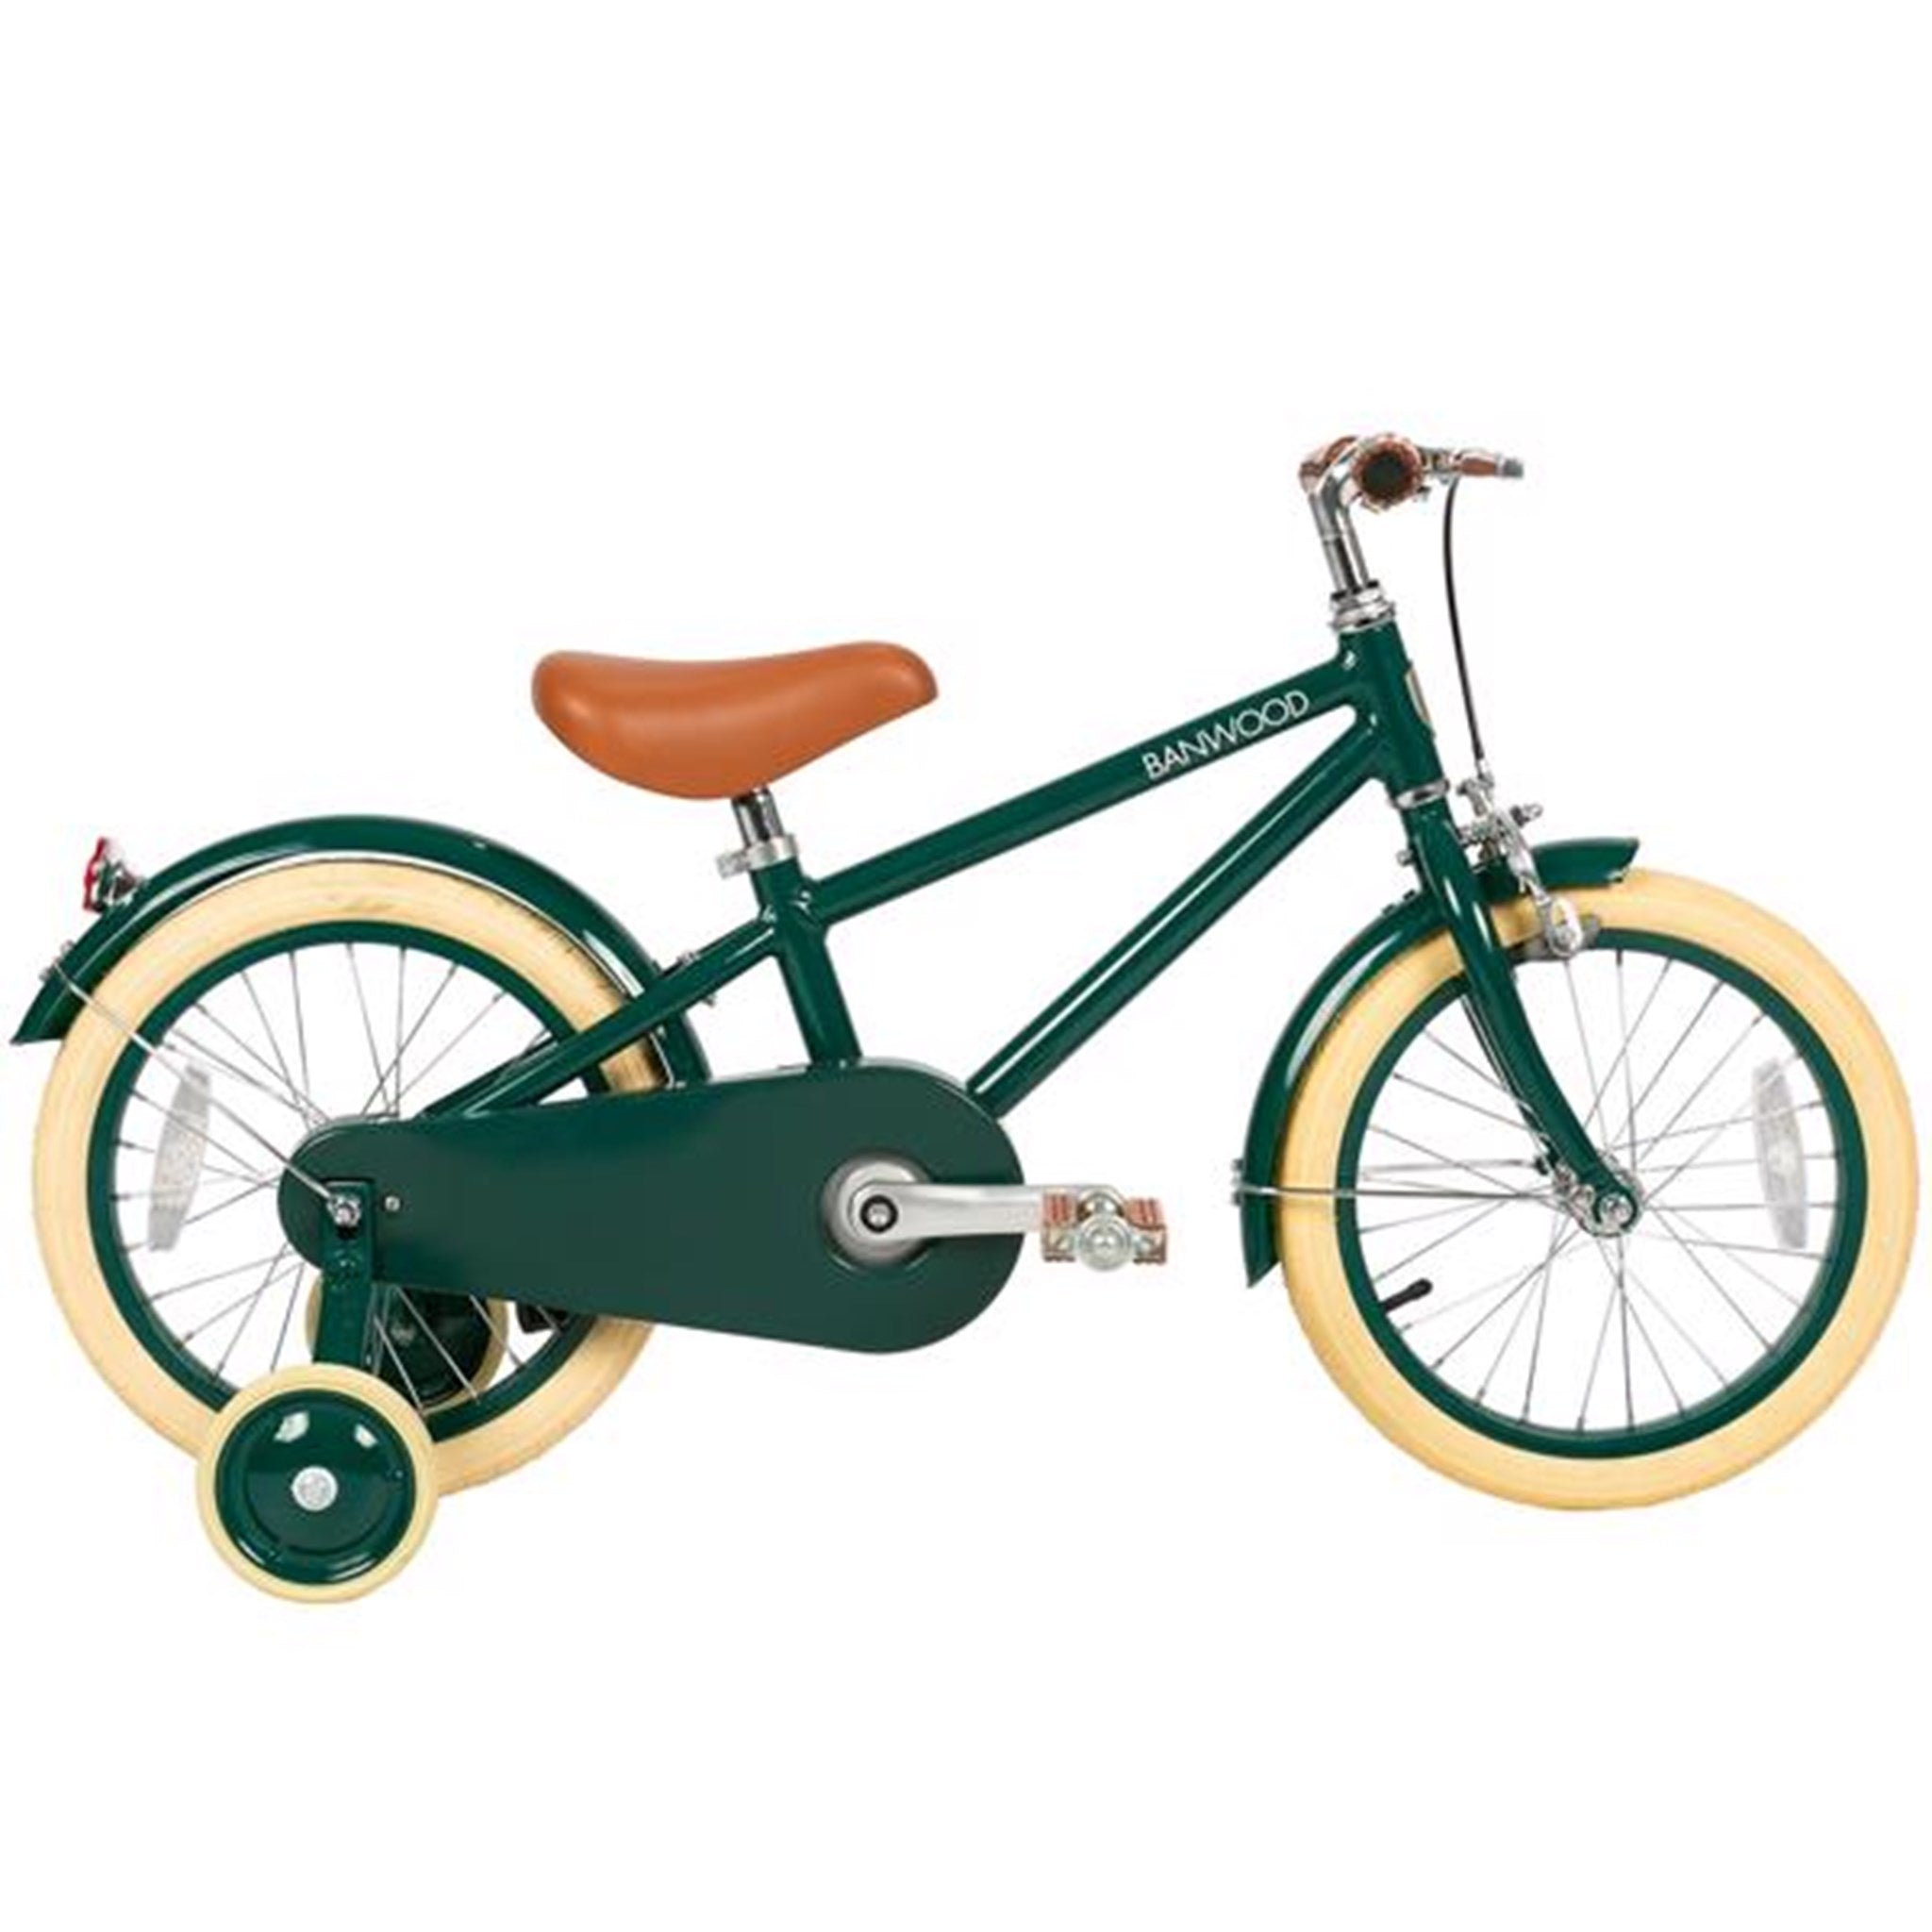 Banwood Classic Bicycle Green 8